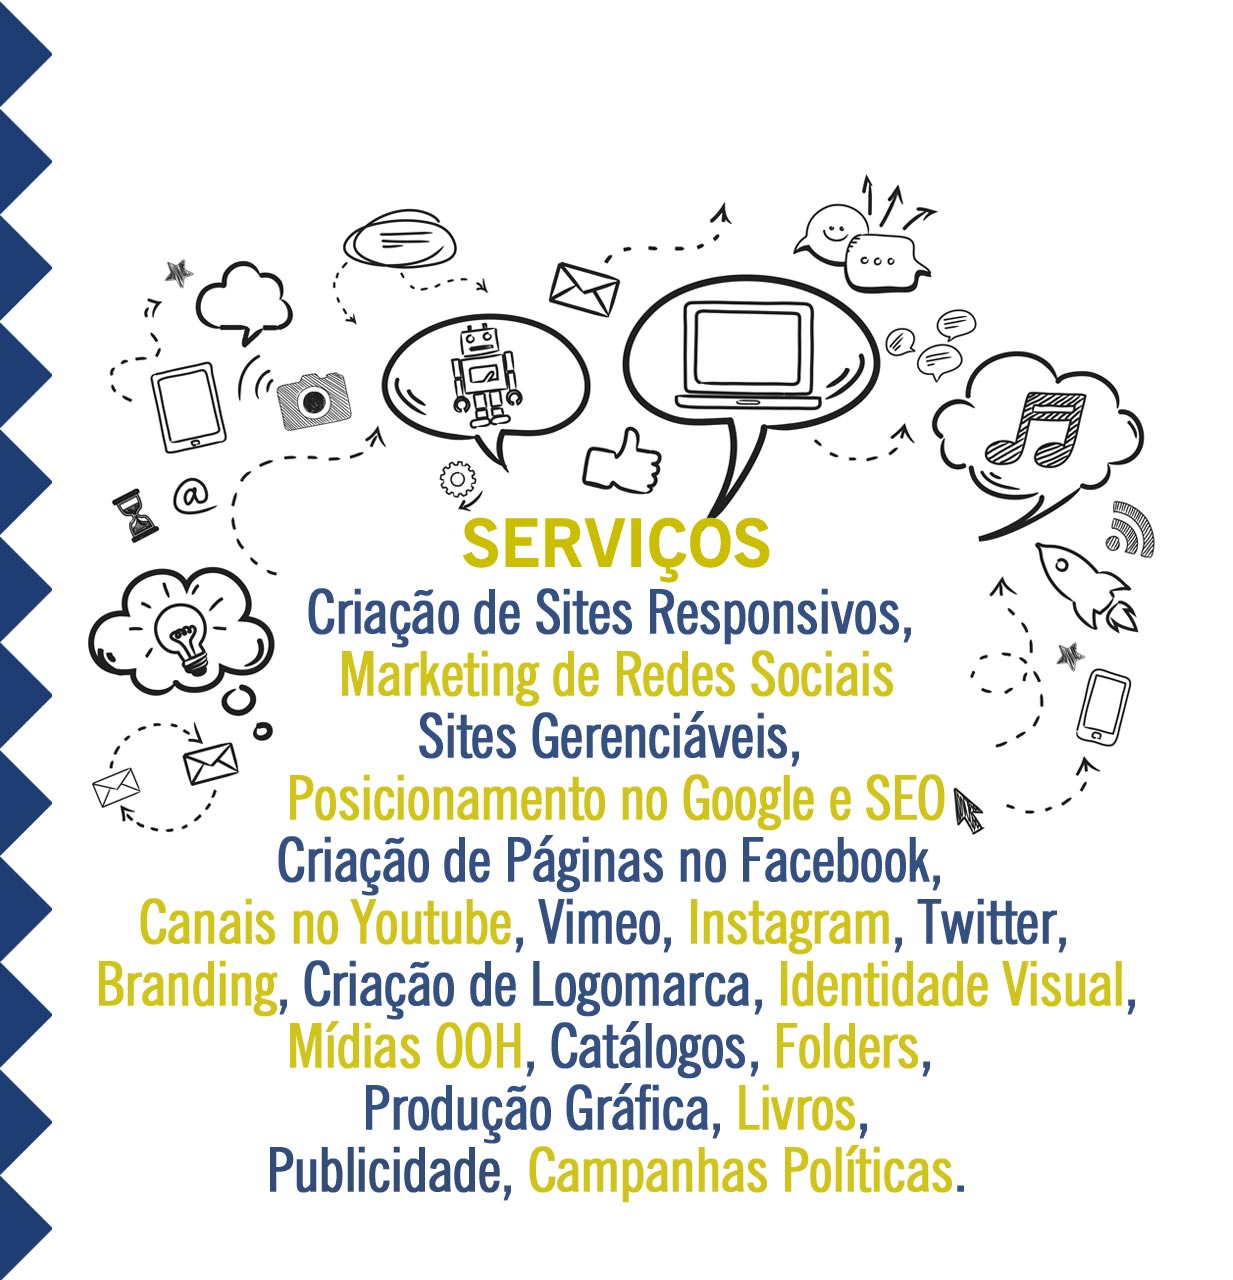 Criação de Sites Responsivos, Marketing de Redes Sociais, Branding, Rio de Janeiro